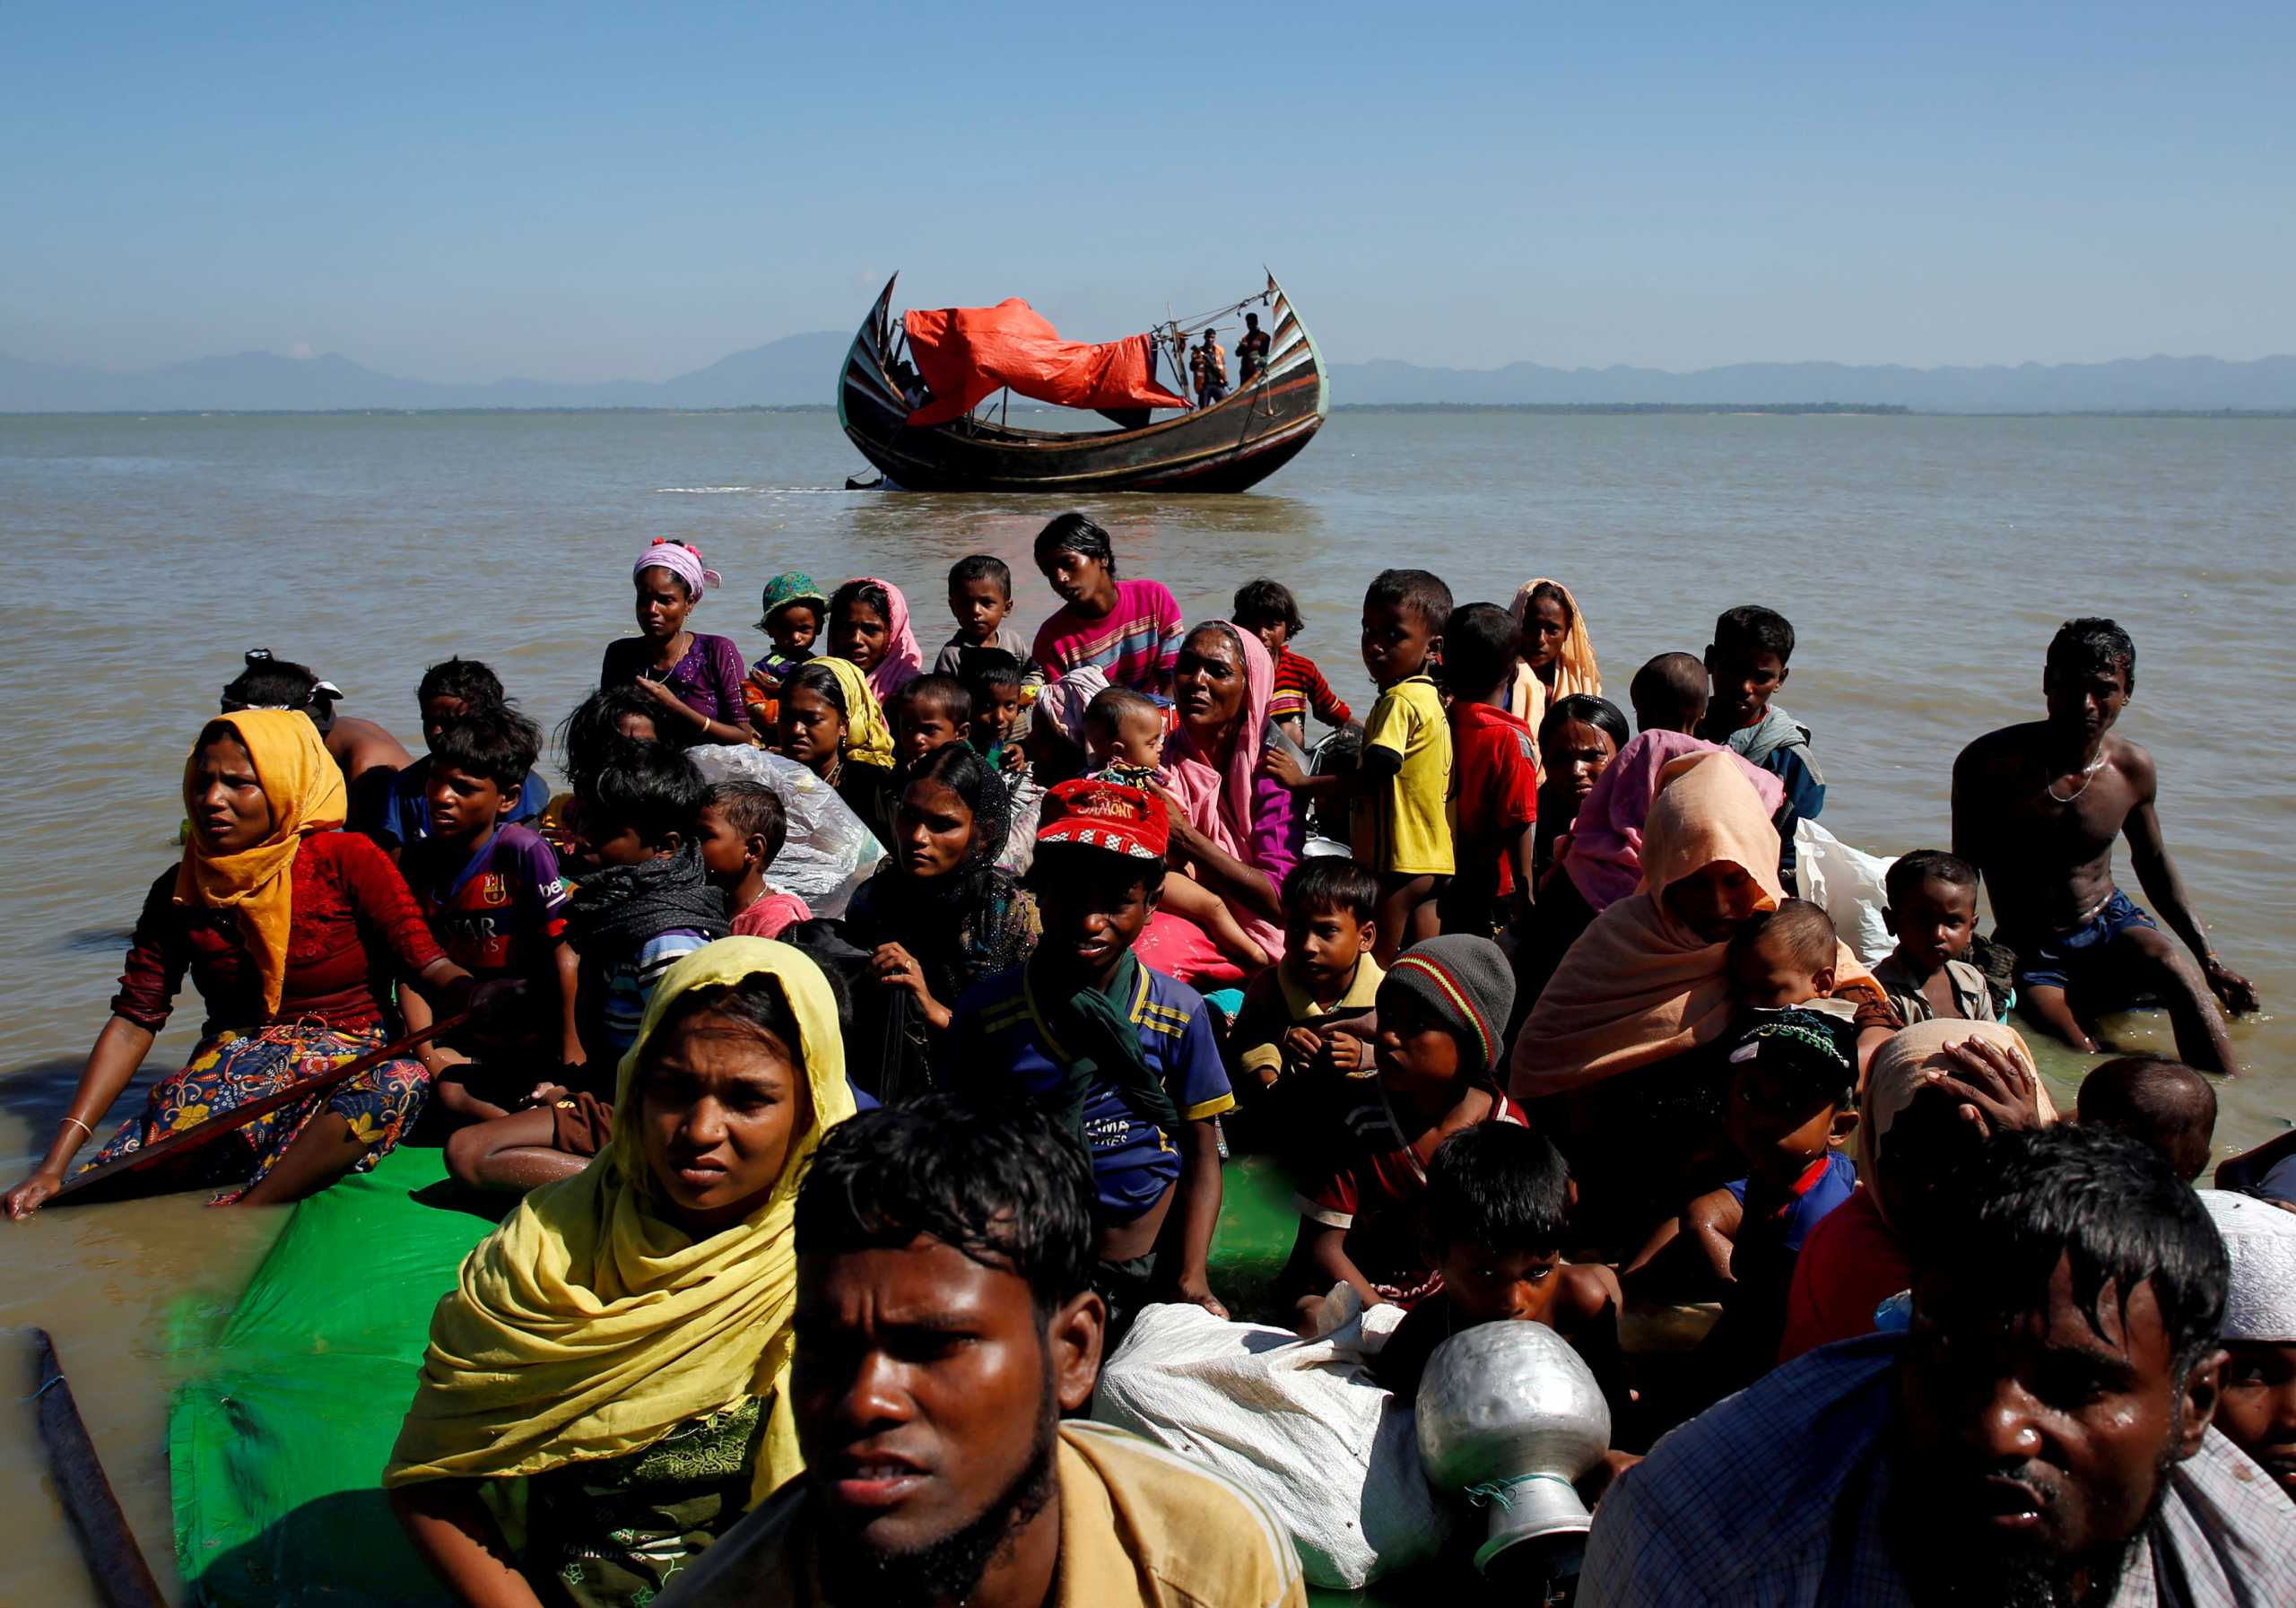 Μιανμάρ: Τα πτώματα 14 ανθρώπων, μελών της μειονότητας Ροχίνγκια βρέθηκαν σε παραλία